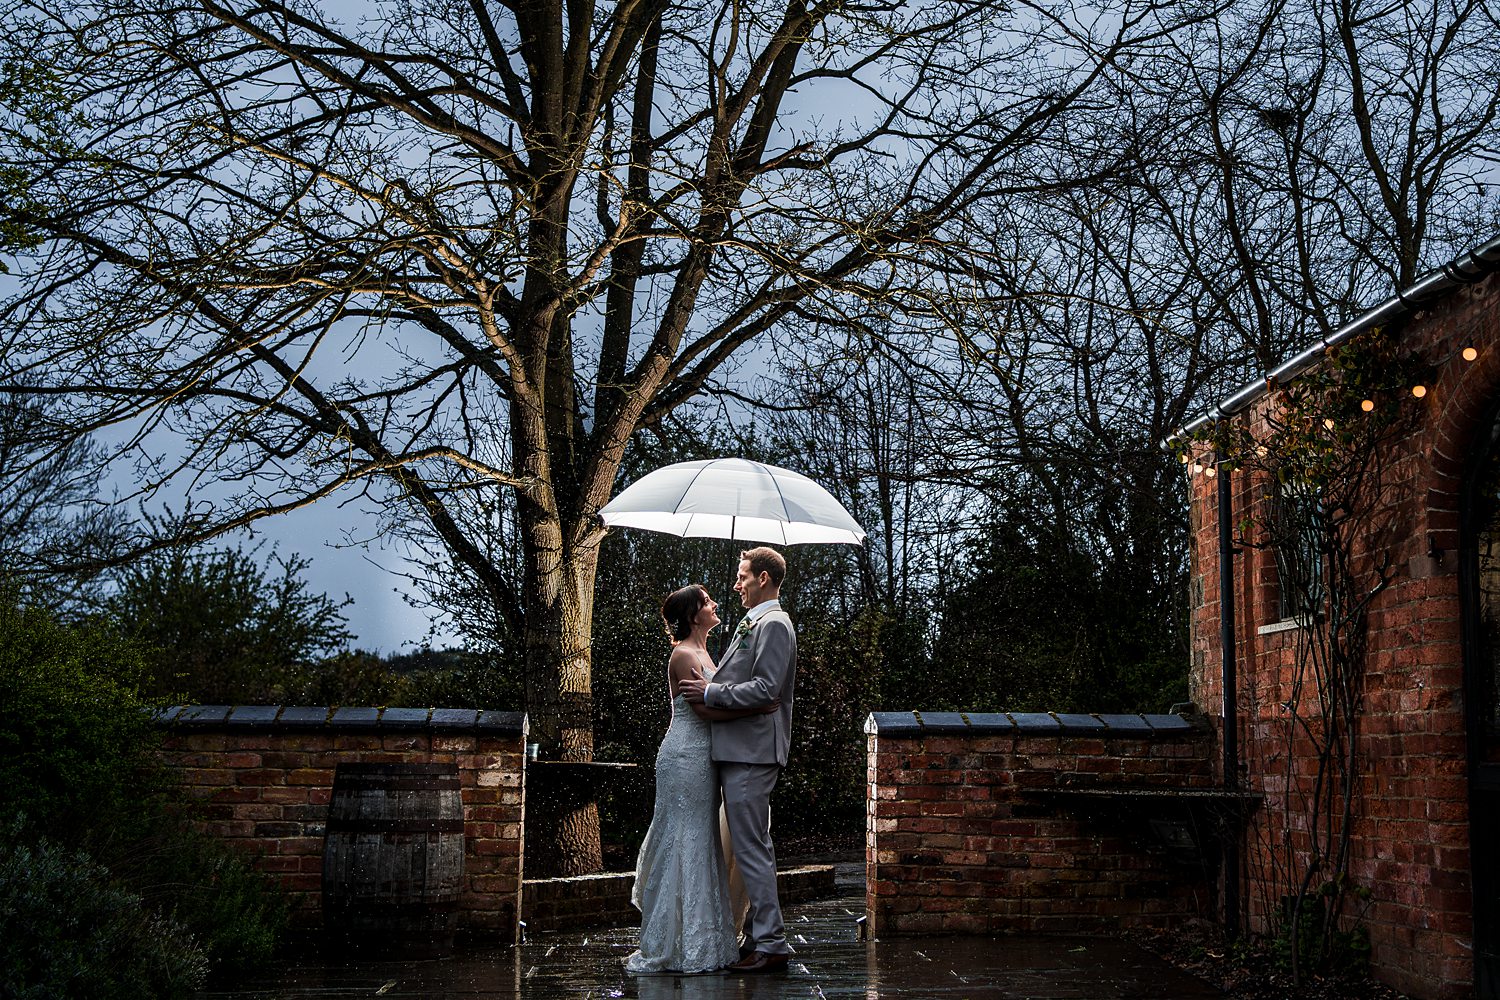 Couple with umbrella in romantic rainy wedding scene.